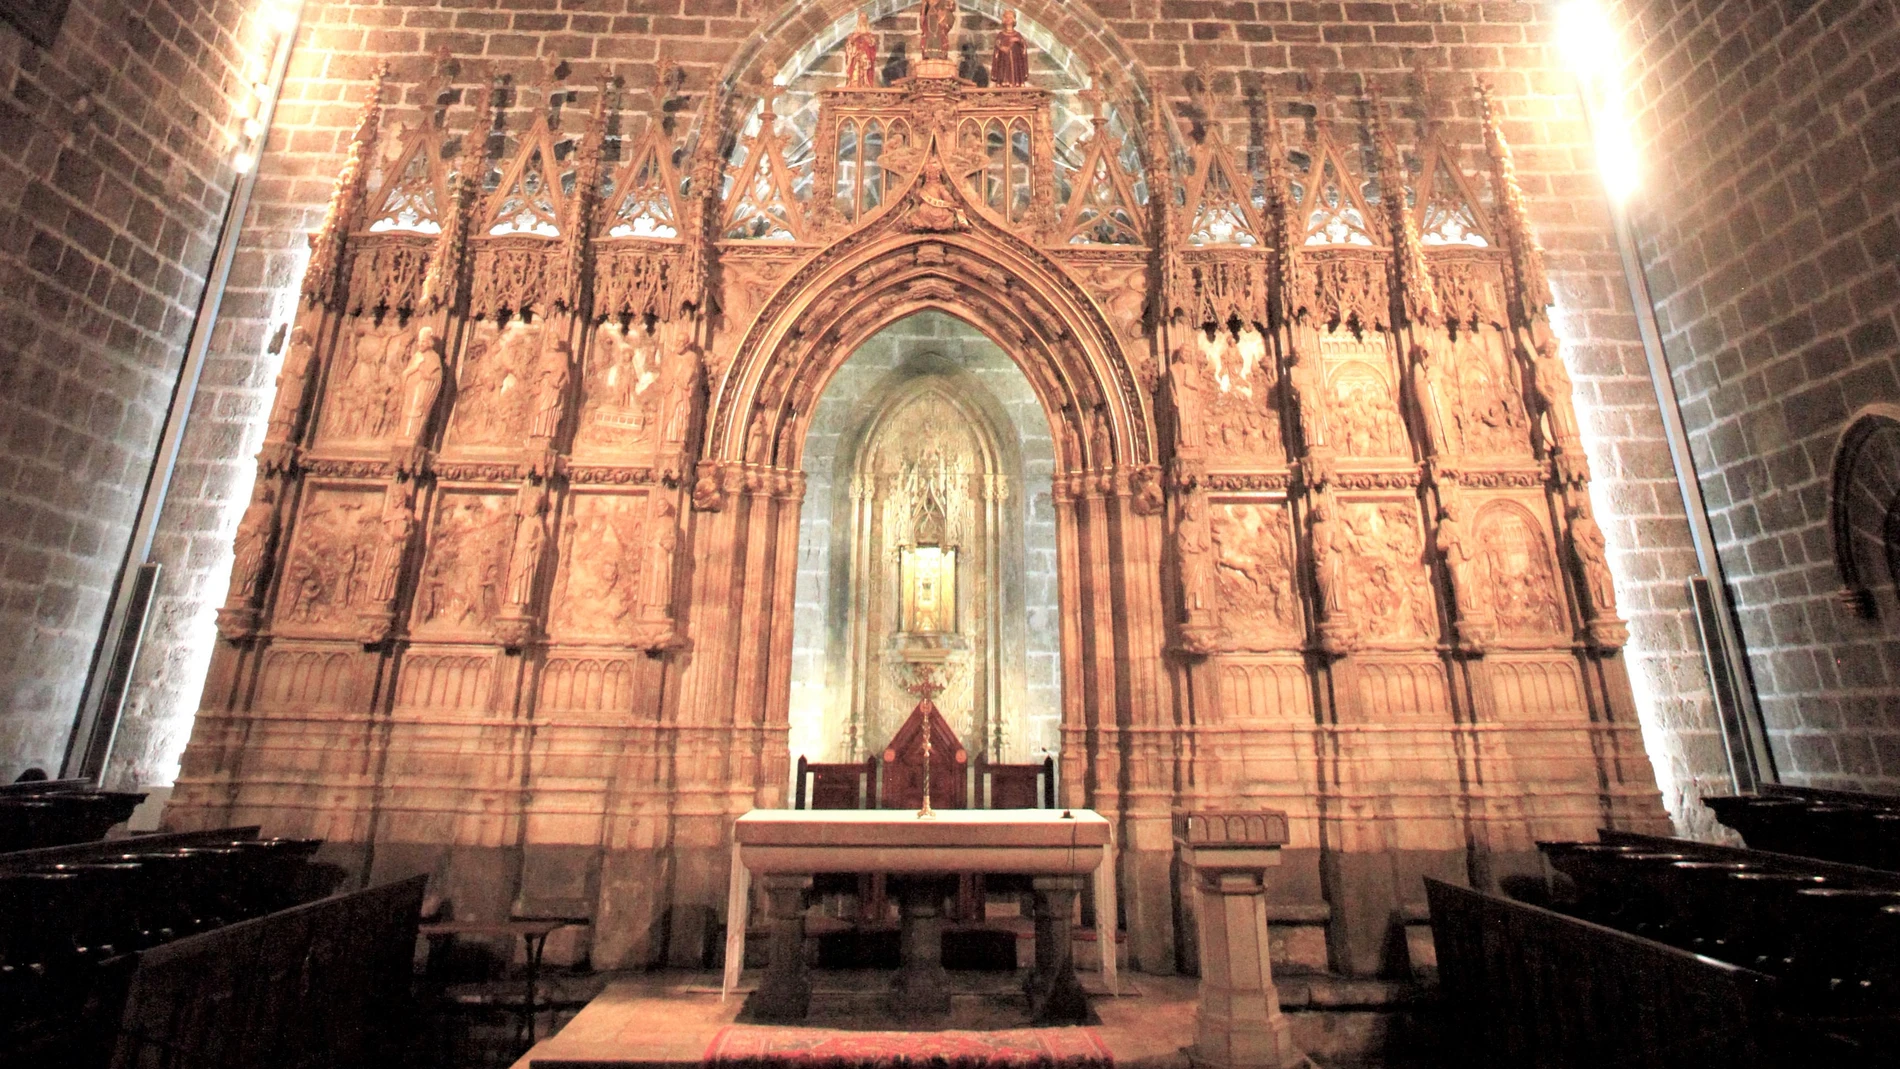 Capilla Catedral de Valencia